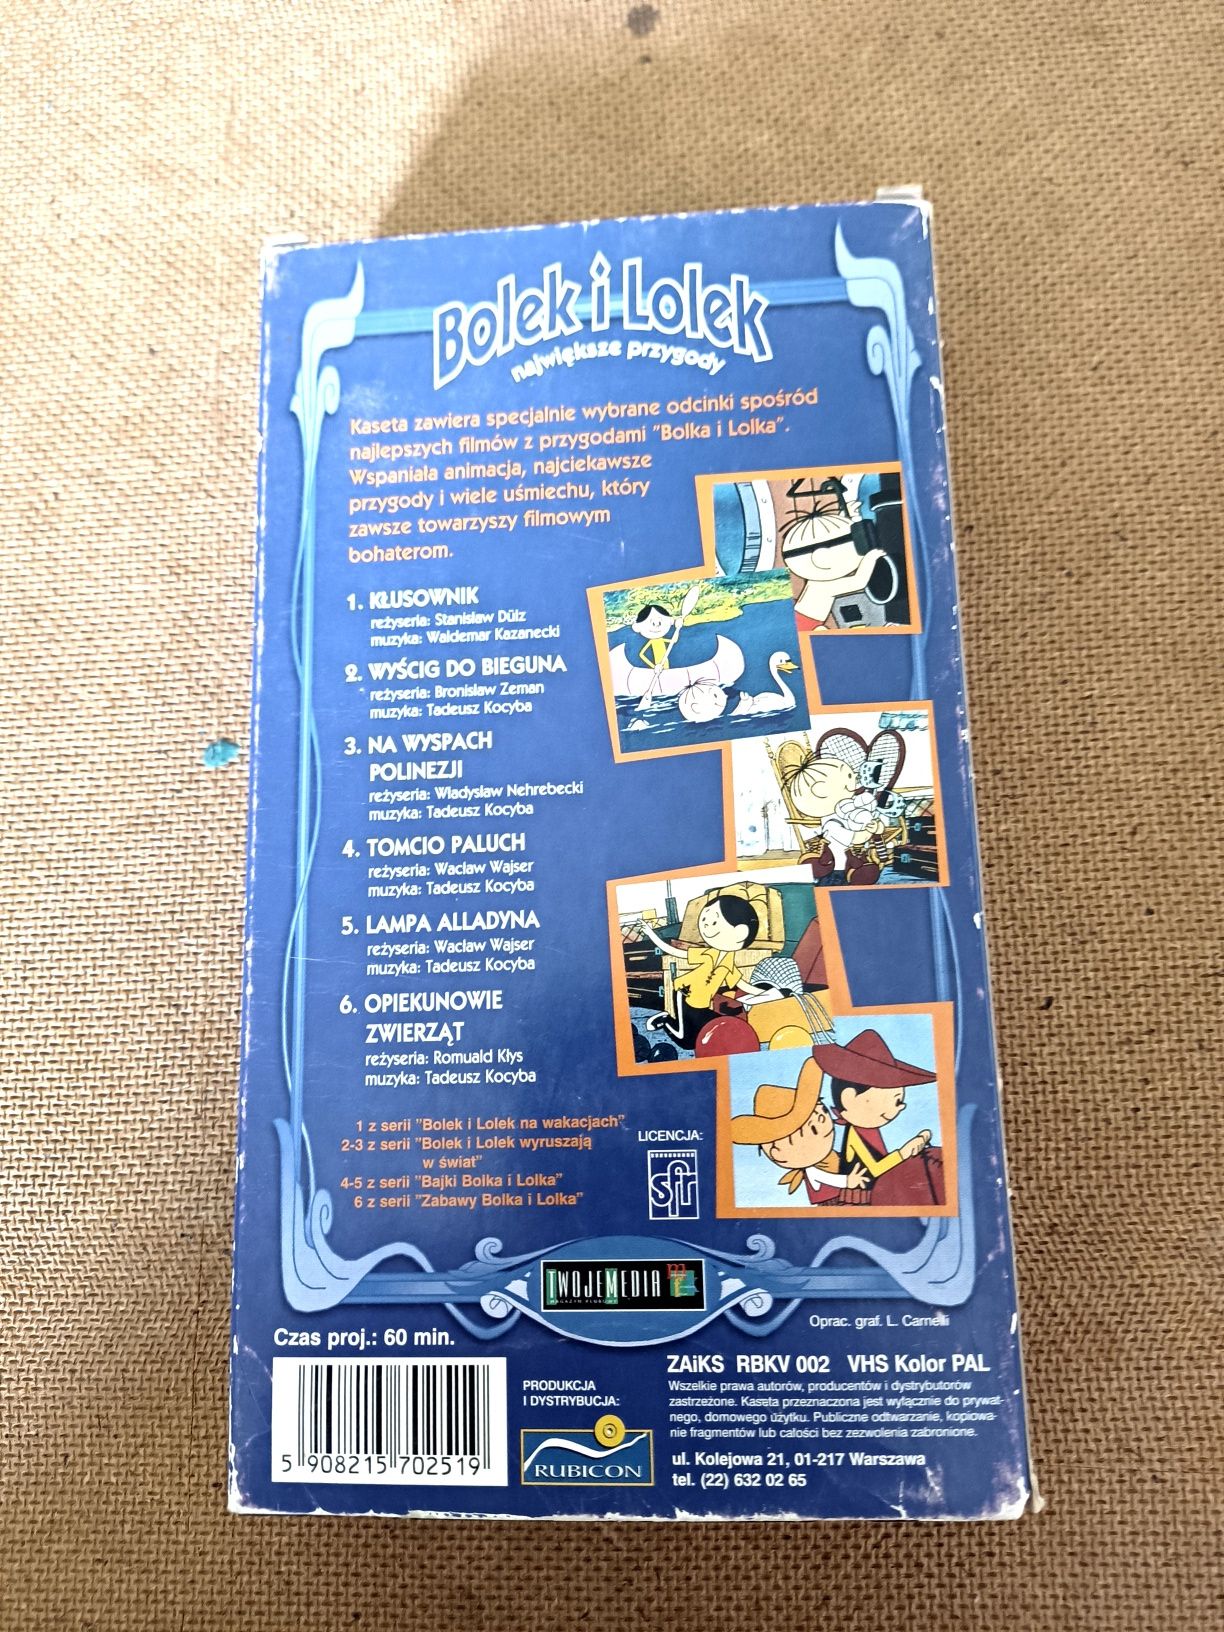 Bolek i Lolek największe przygody VHS